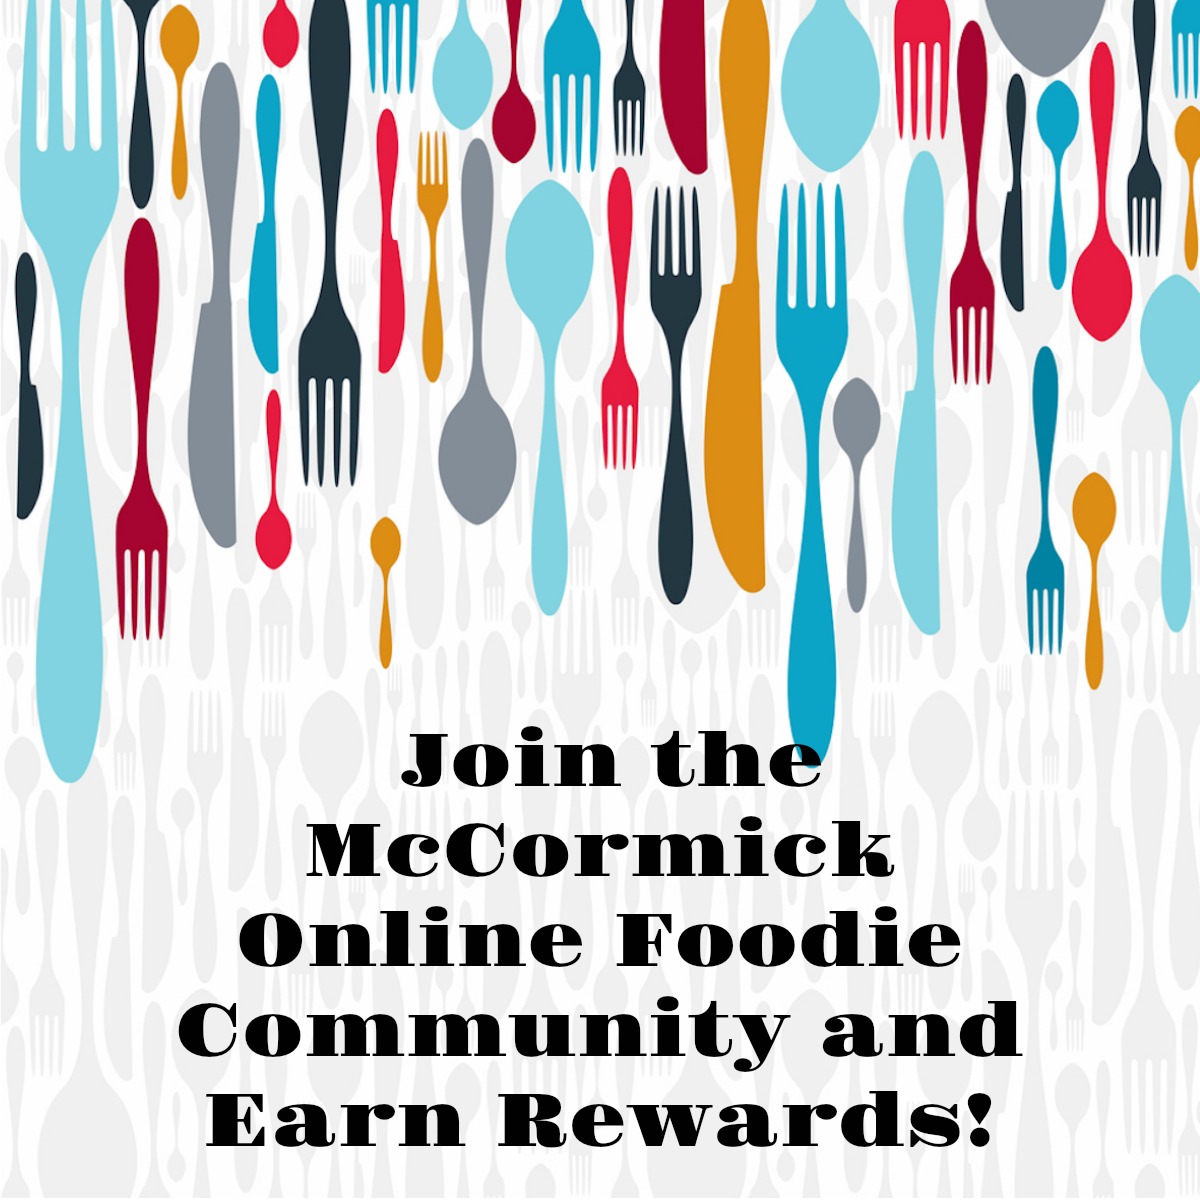 McCormick online foodie community